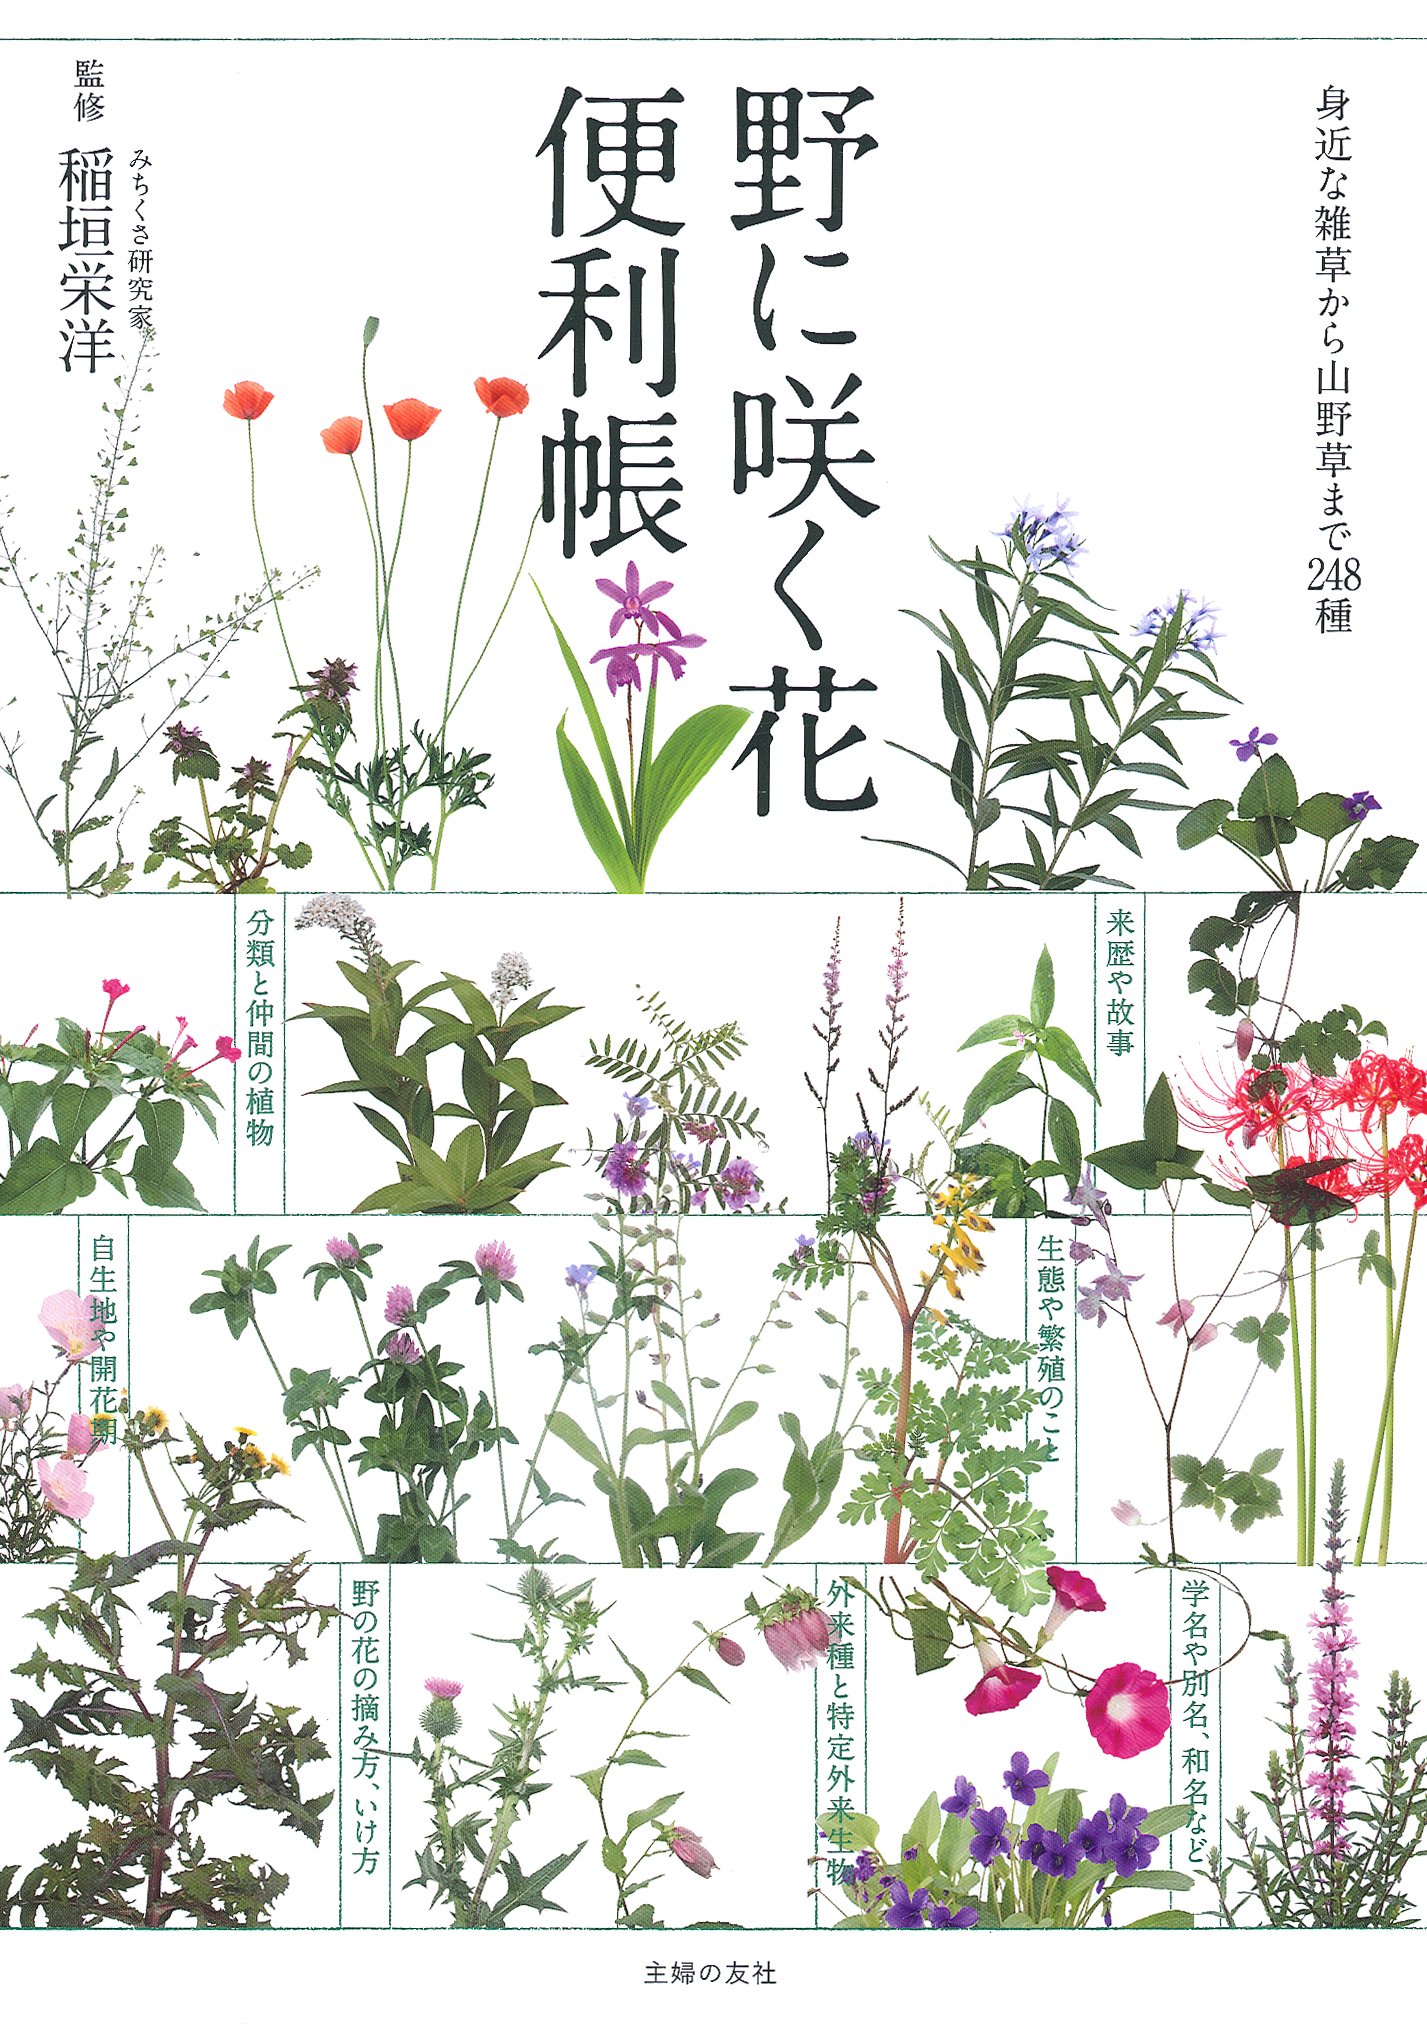 野に咲く花便利帳.jpg